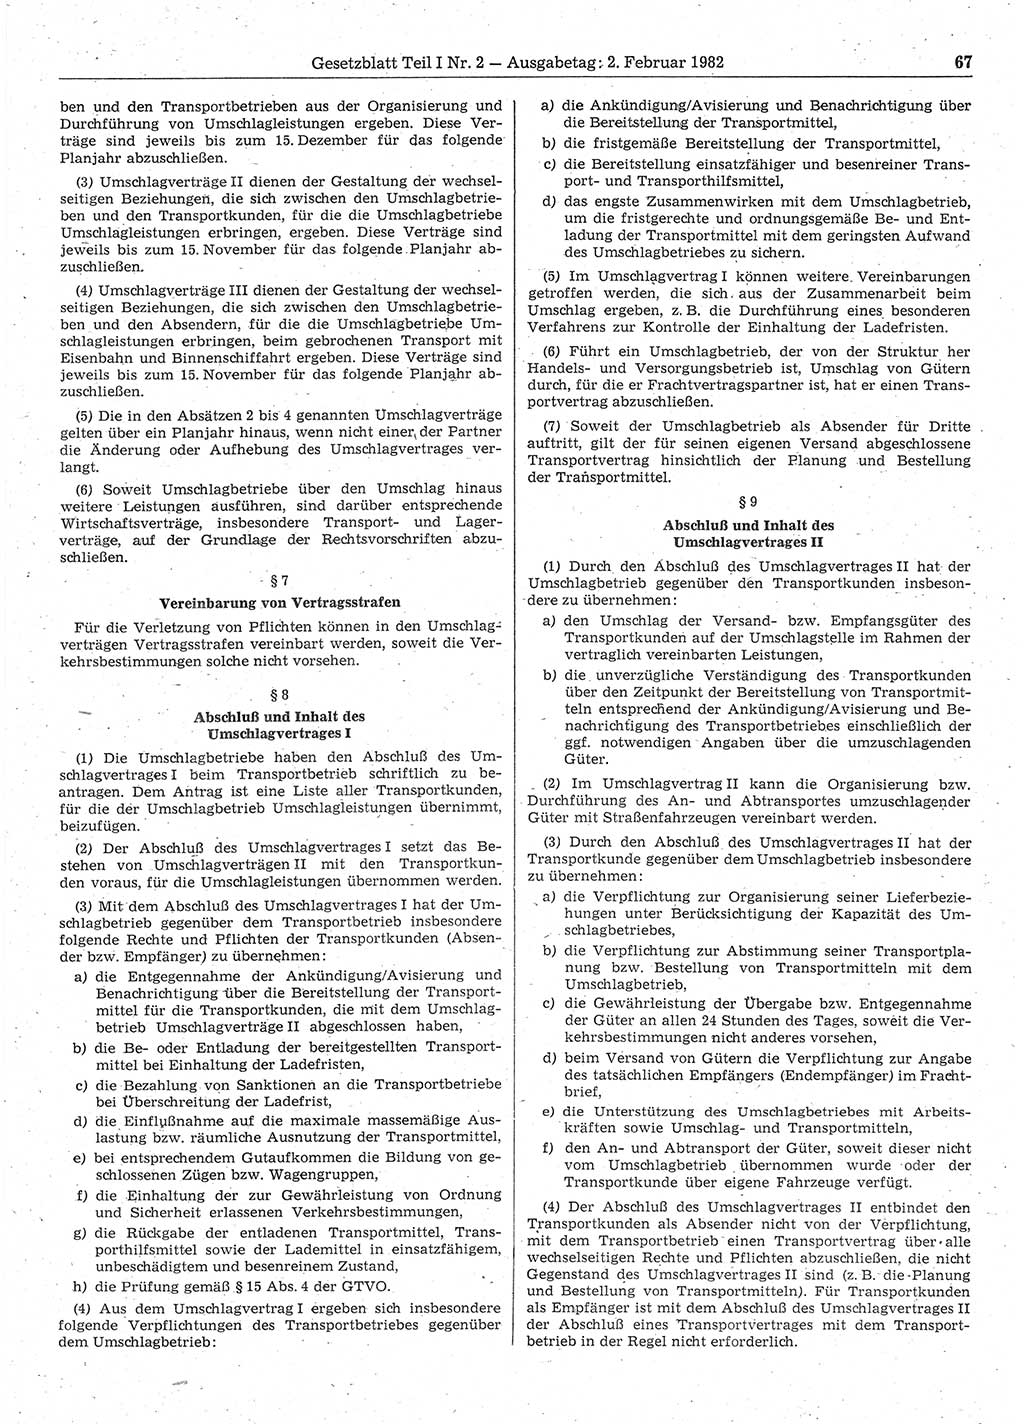 Gesetzblatt (GBl.) der Deutschen Demokratischen Republik (DDR) Teil Ⅰ 1982, Seite 67 (GBl. DDR Ⅰ 1982, S. 67)